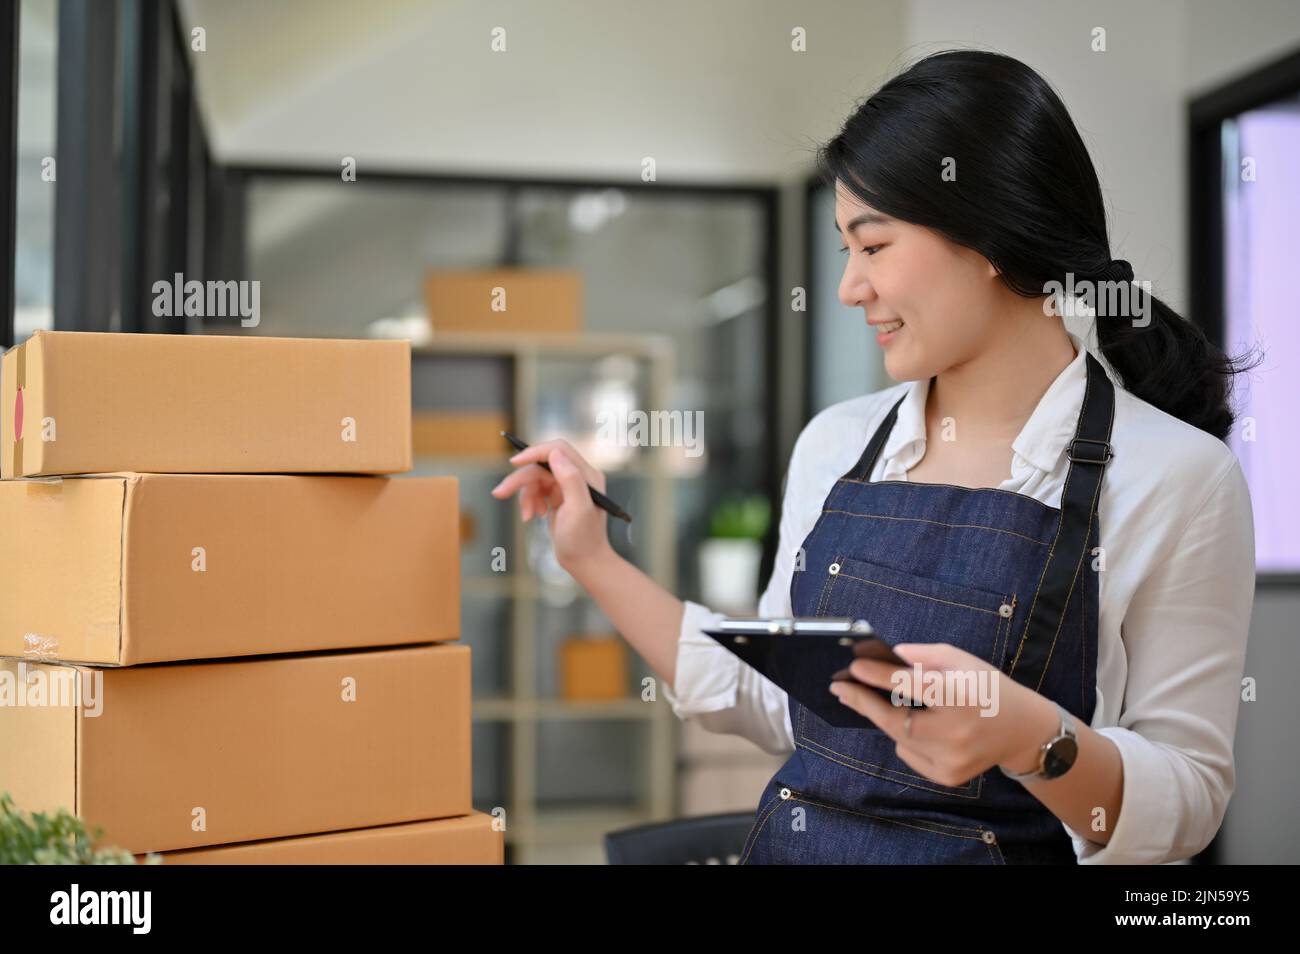 Professionelle junge asiatische Geschäftsfrau oder weibliche Online-E-Commerce-Shop-Besitzer Überprüfung ihrer Versand Tracking-Nummer, arbeiten und Vorbereitung Paket-Box Stockfoto